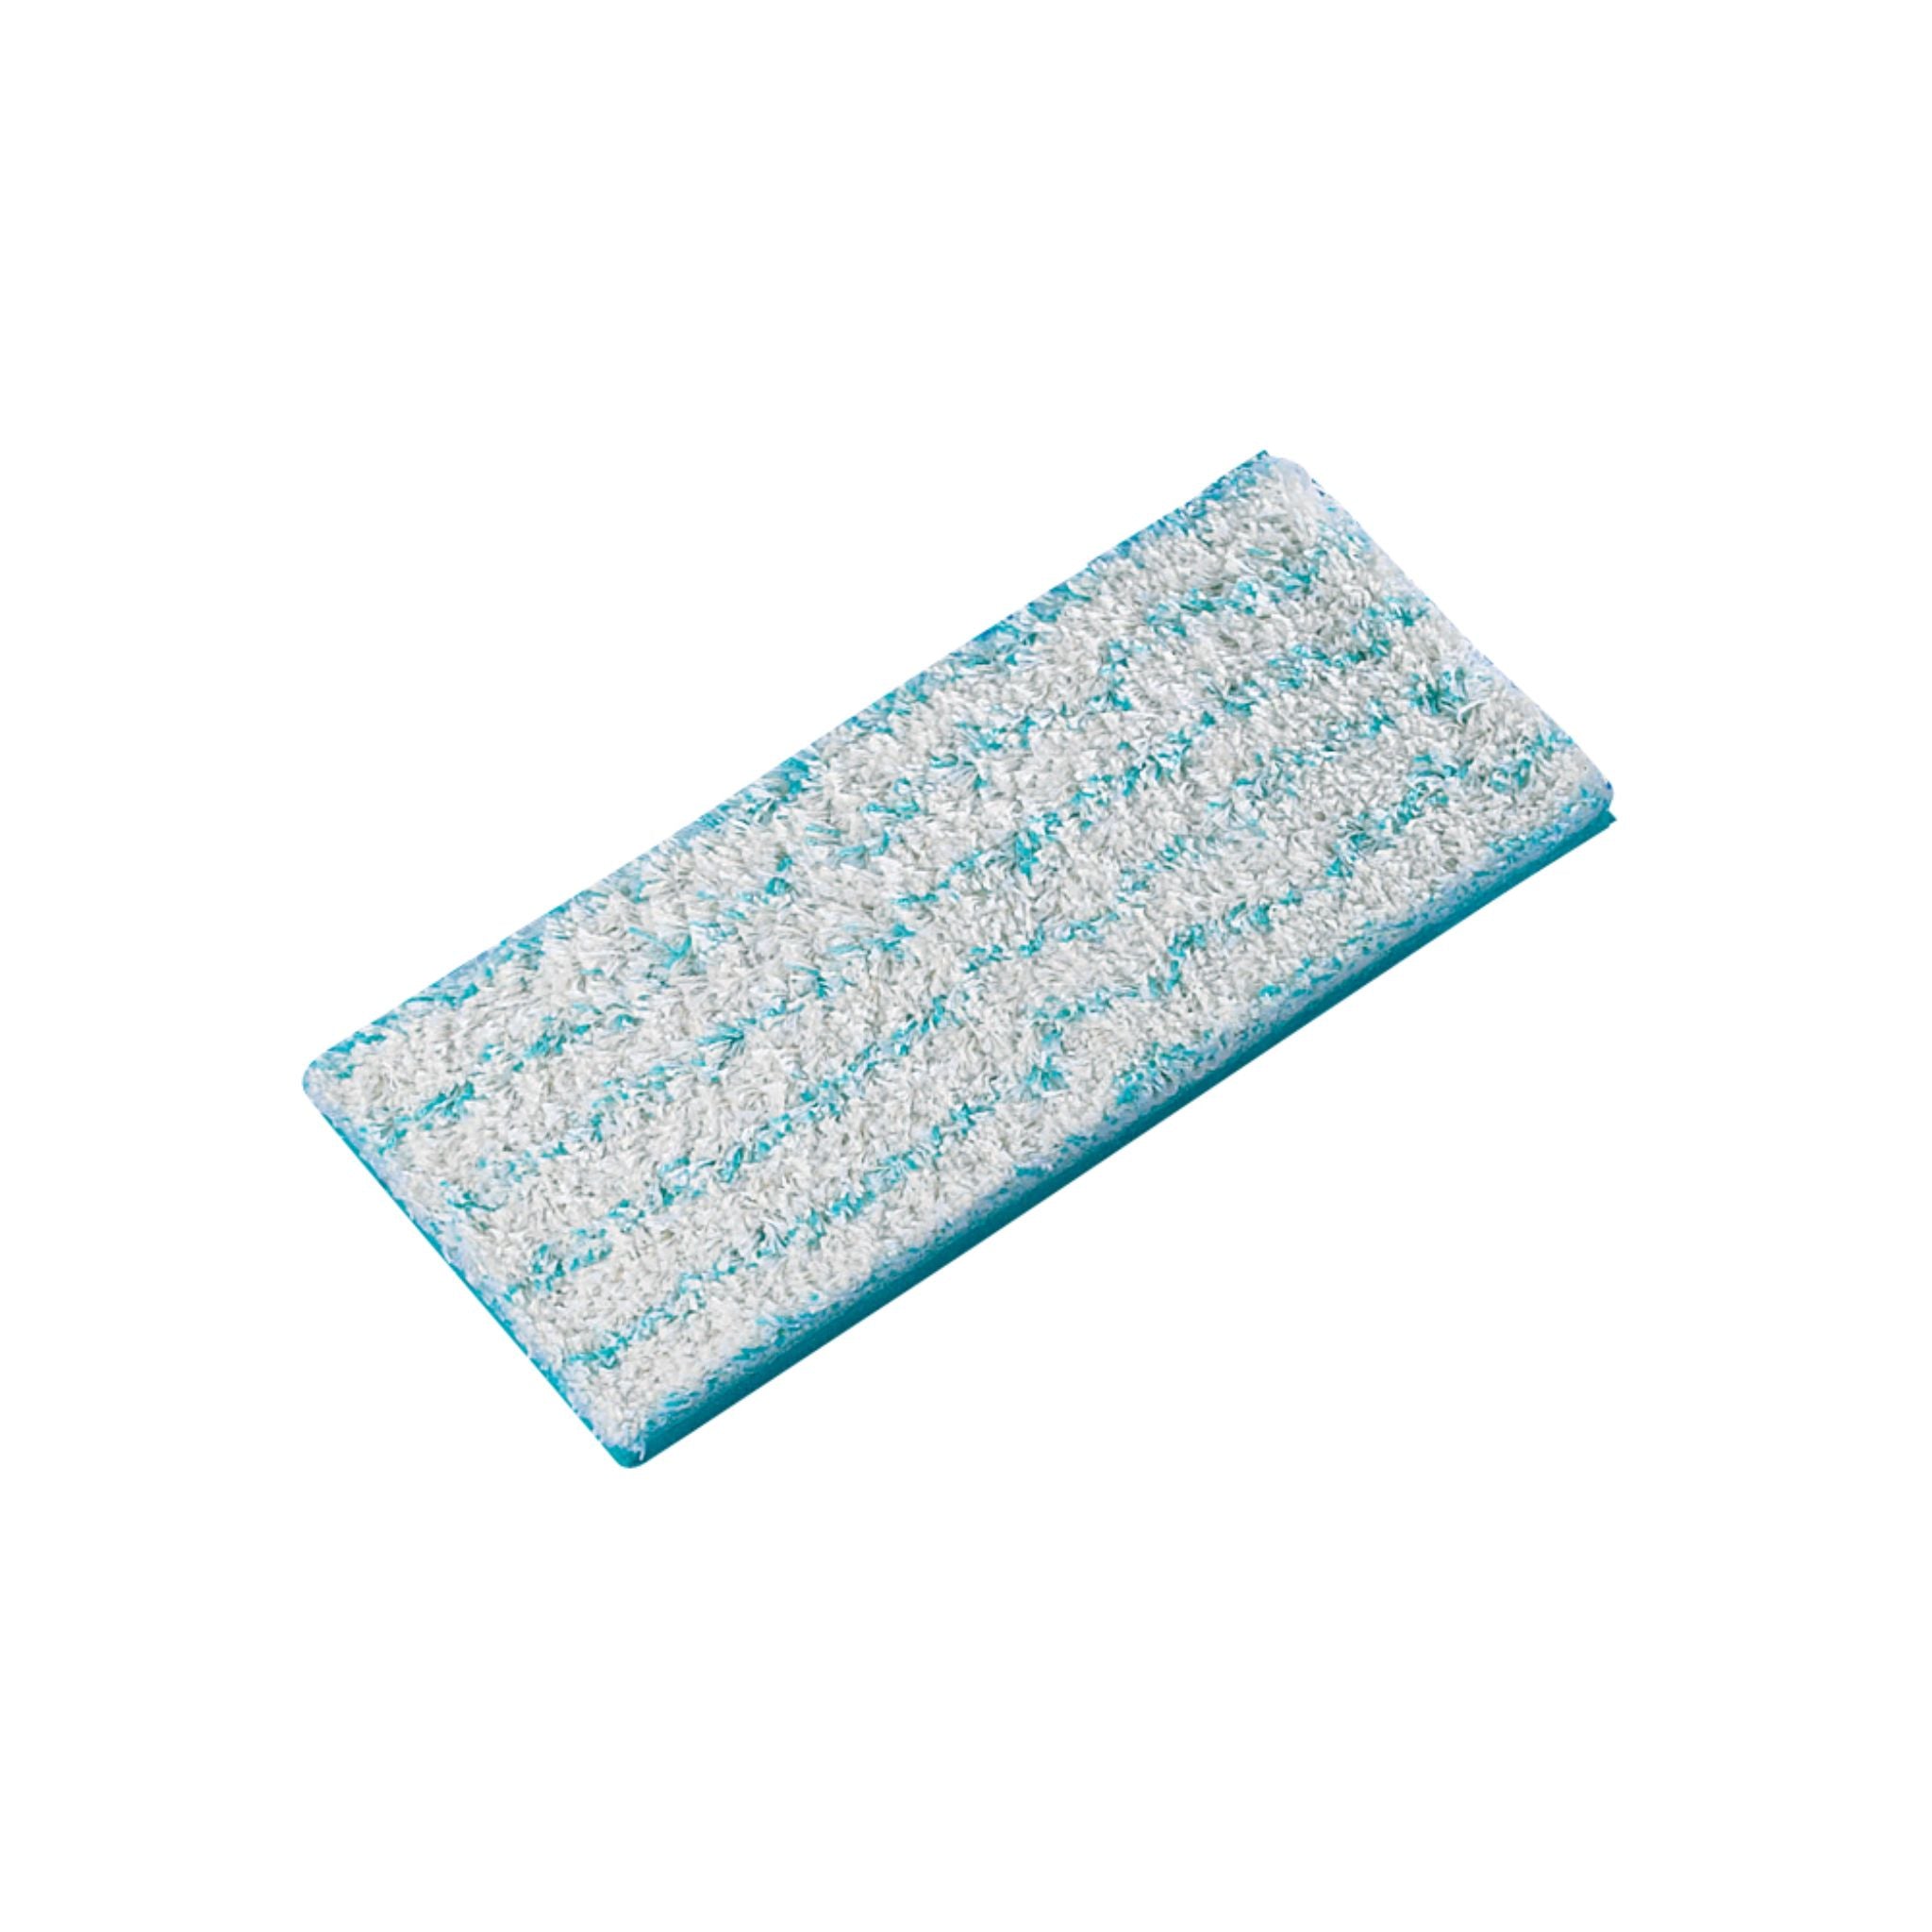 LEIFHEIT Picobellow Wiper Pads Cotton plus S (27cm)